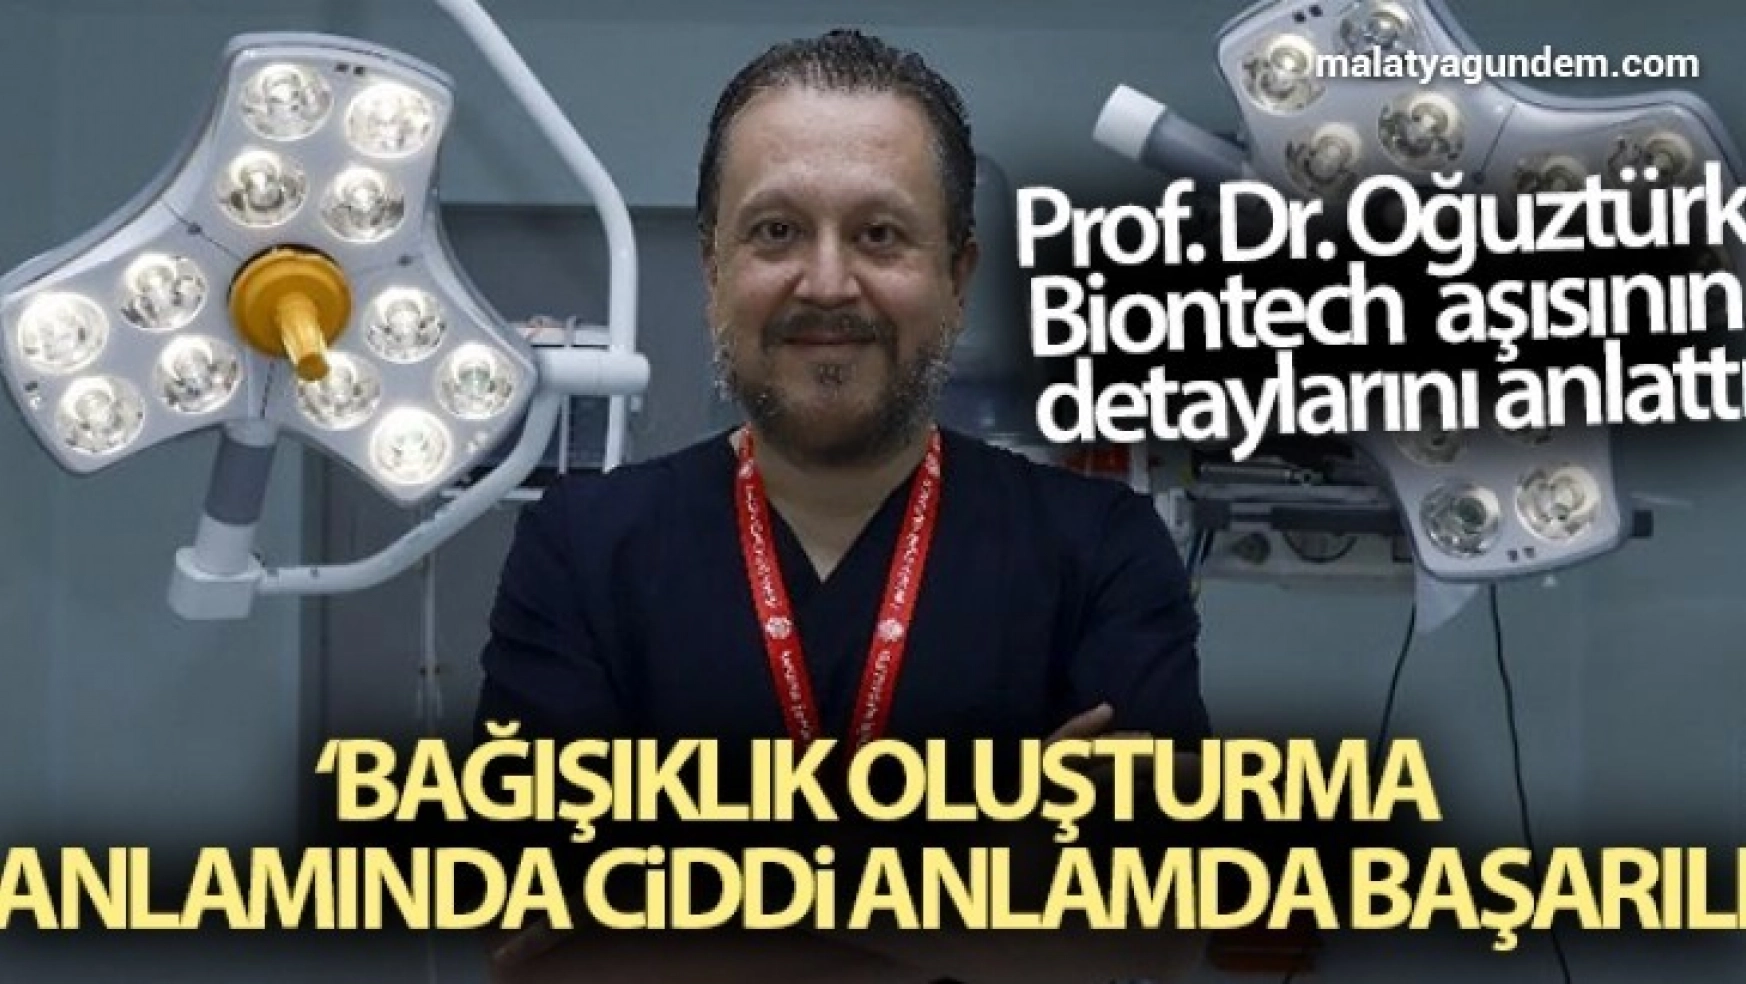 Prof. Dr. Oğuztürk Biontech aşısının detaylarını anlattı